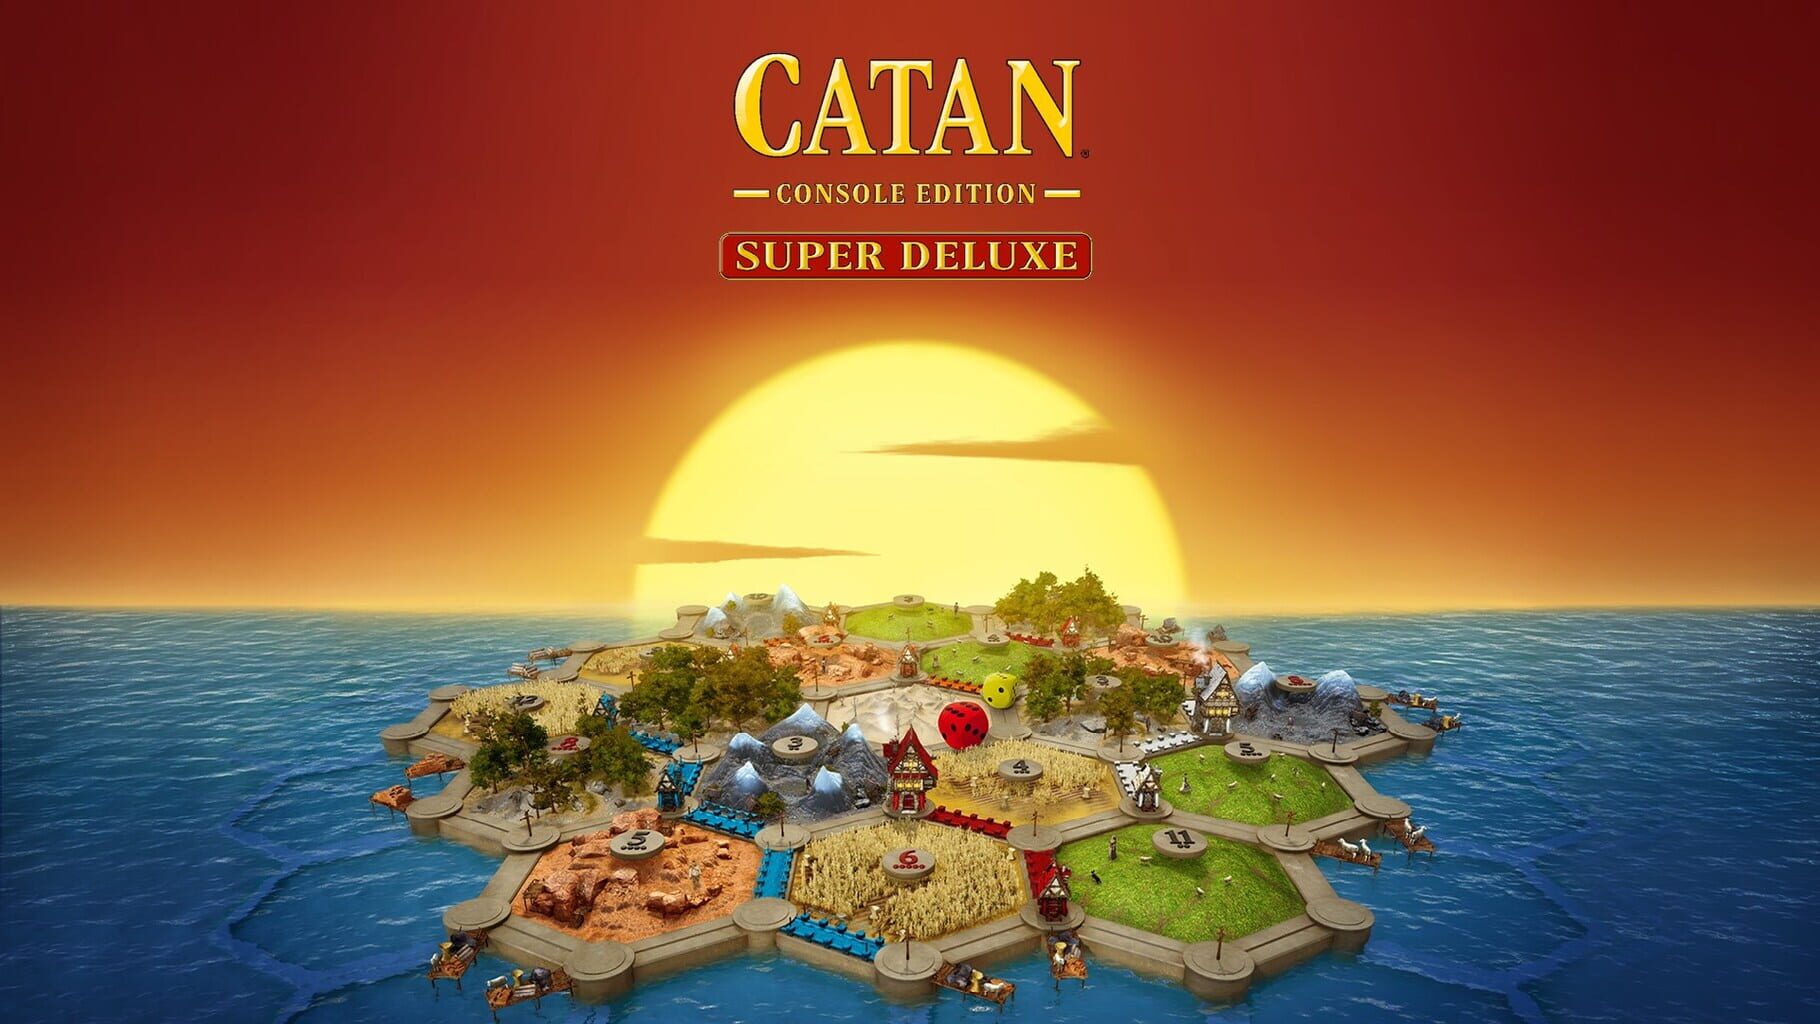 Catan: Console Edition - Super Deluxe artwork